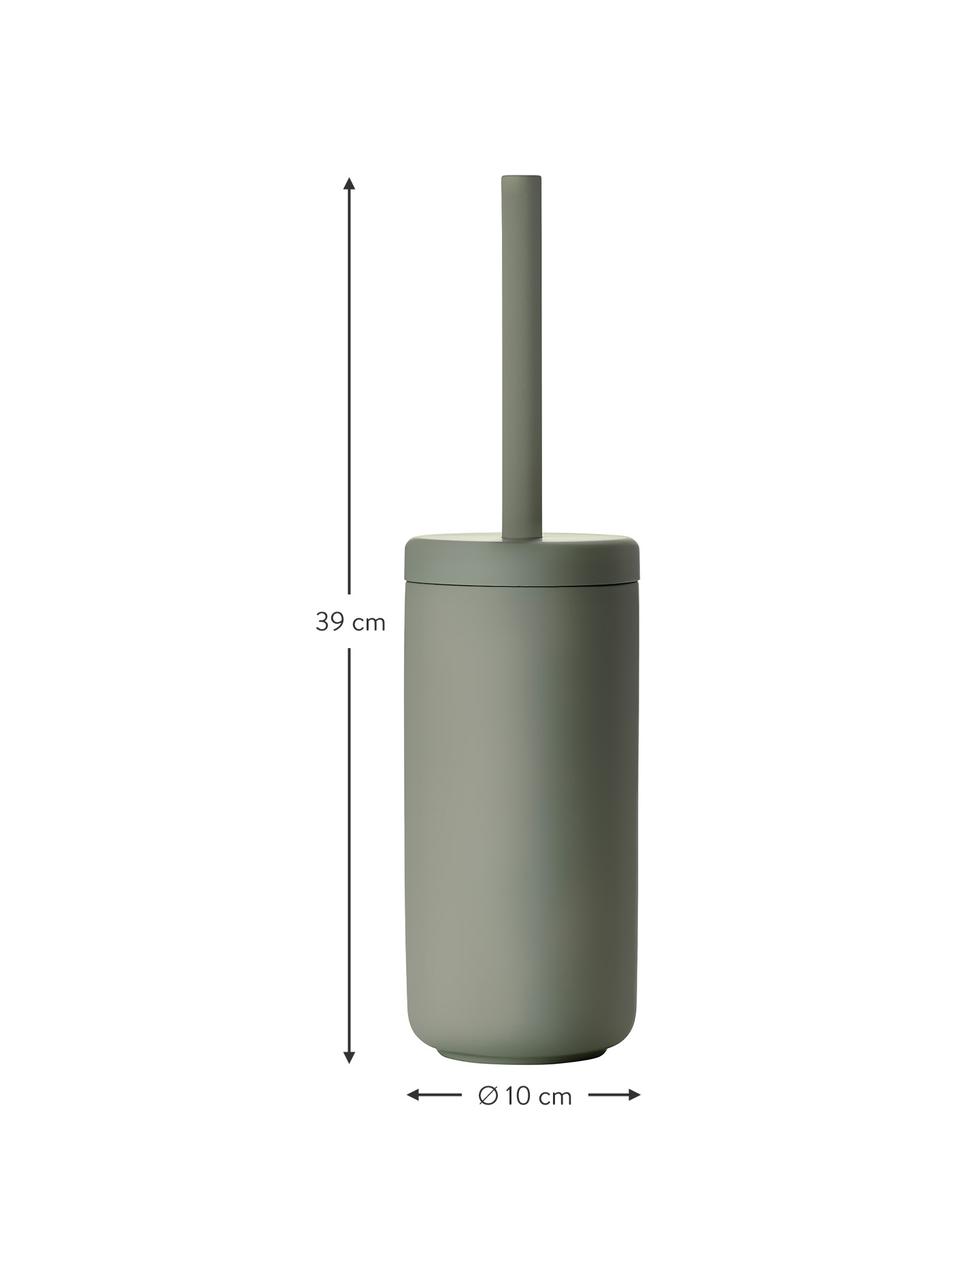 Toilettenbürste Ume mit Behälter, Behälter: Steingut überzogen mit So, Griff: Kunststoff, Eukalyptusgrün, Ø 10 x H 39 cm